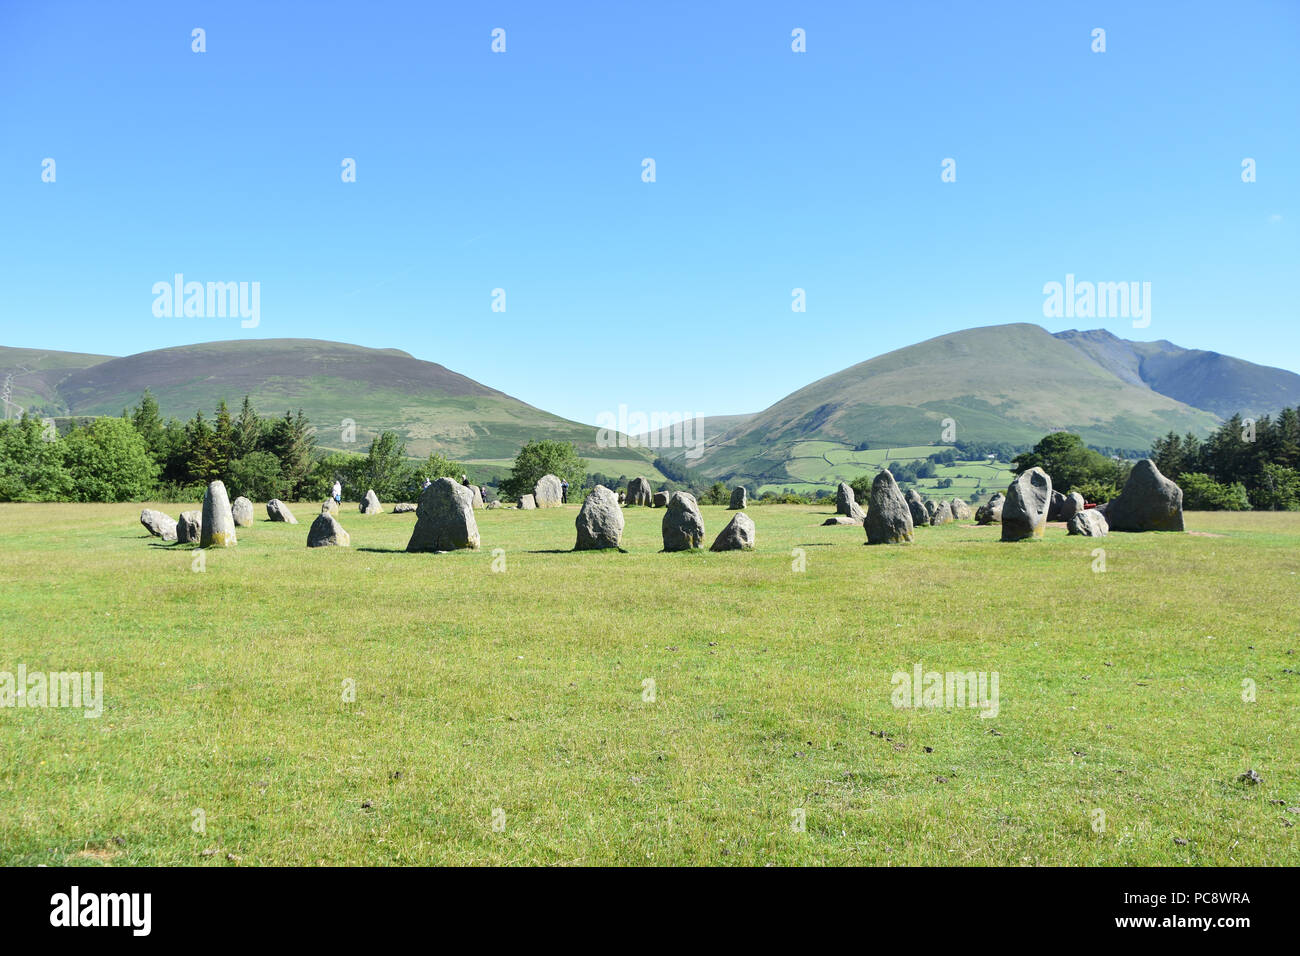 Le cercle de pierres de Castlerigg près de Keswick, en Angleterre. Juin, 2018 Banque D'Images